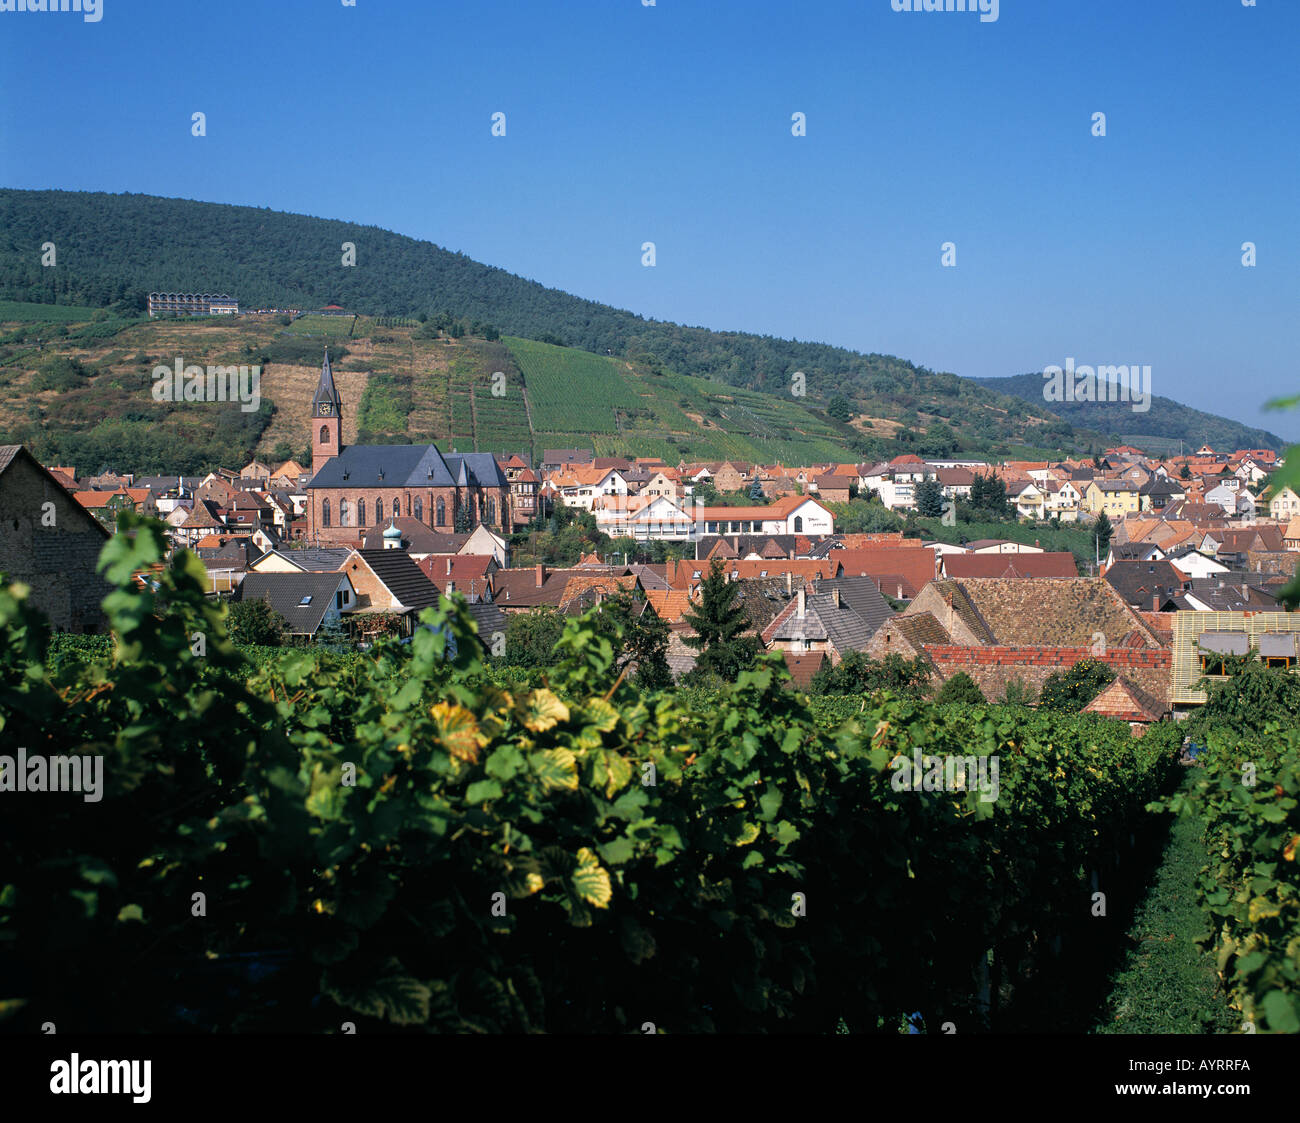 Stadtpanorama vom Weinort St. Martin inmitten von Weinbergen, Deutsche Weinstrasse, Naturpark Pfaelzerwald, Rheinland-Pfalz Stock Photo